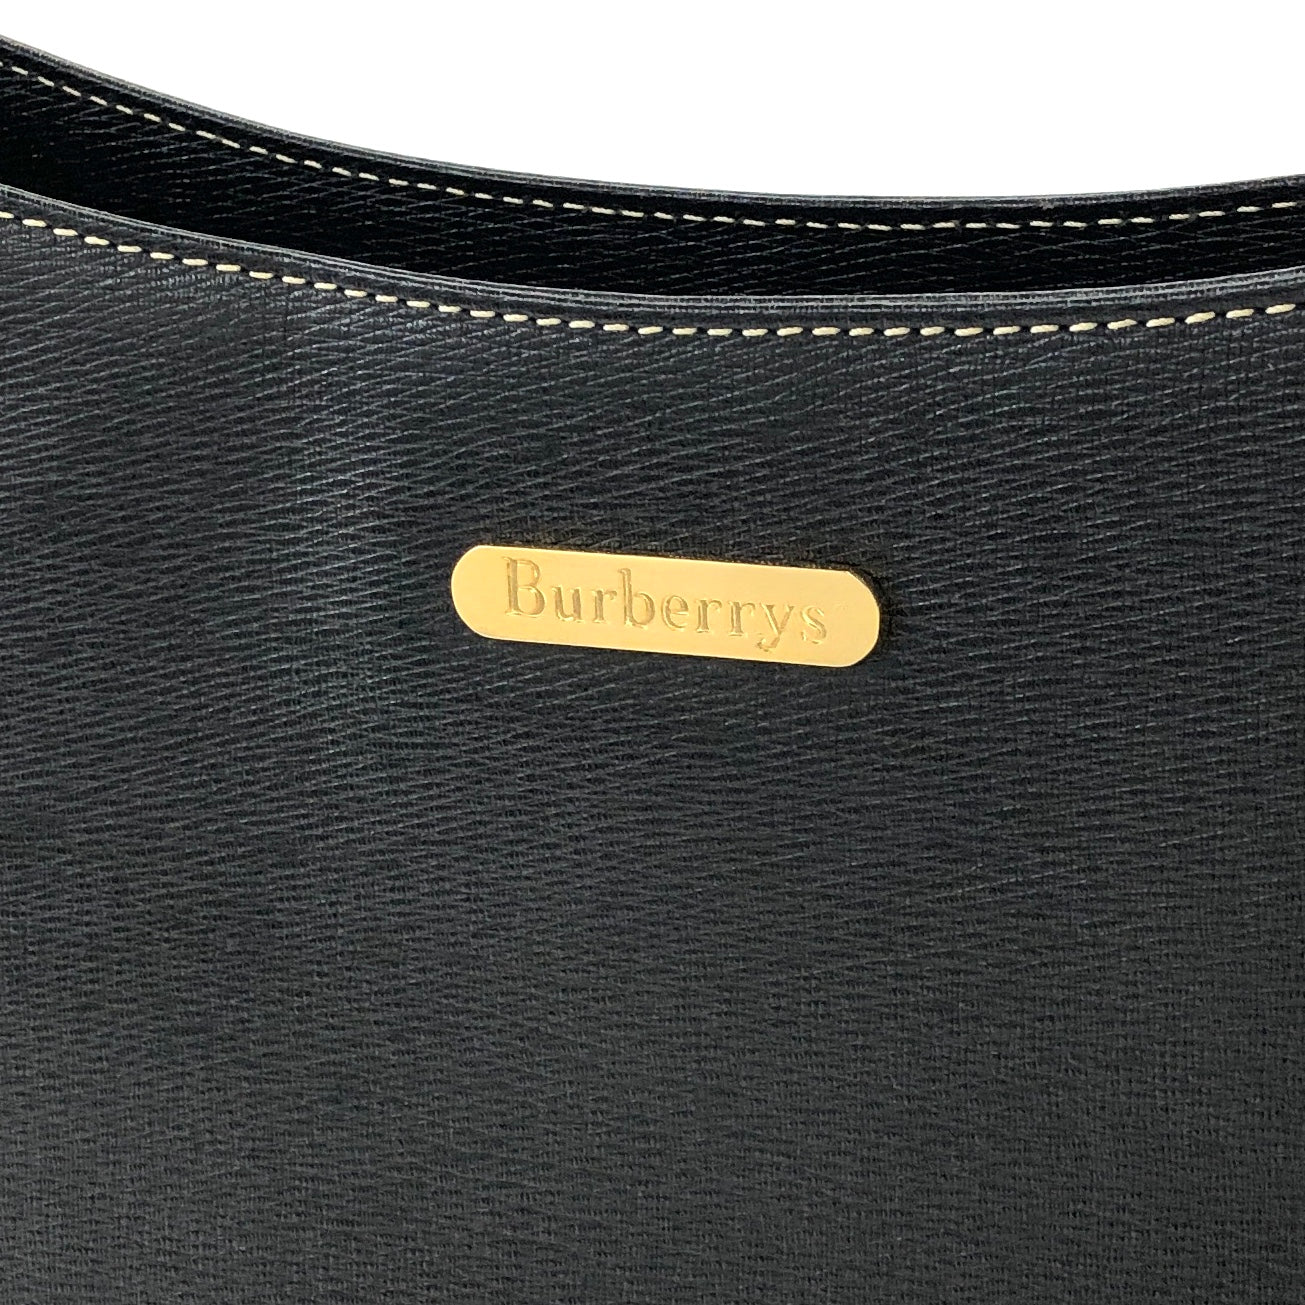 BURBERRY Logo Motif Leather Shoulder bag Black Vintage i2mhup